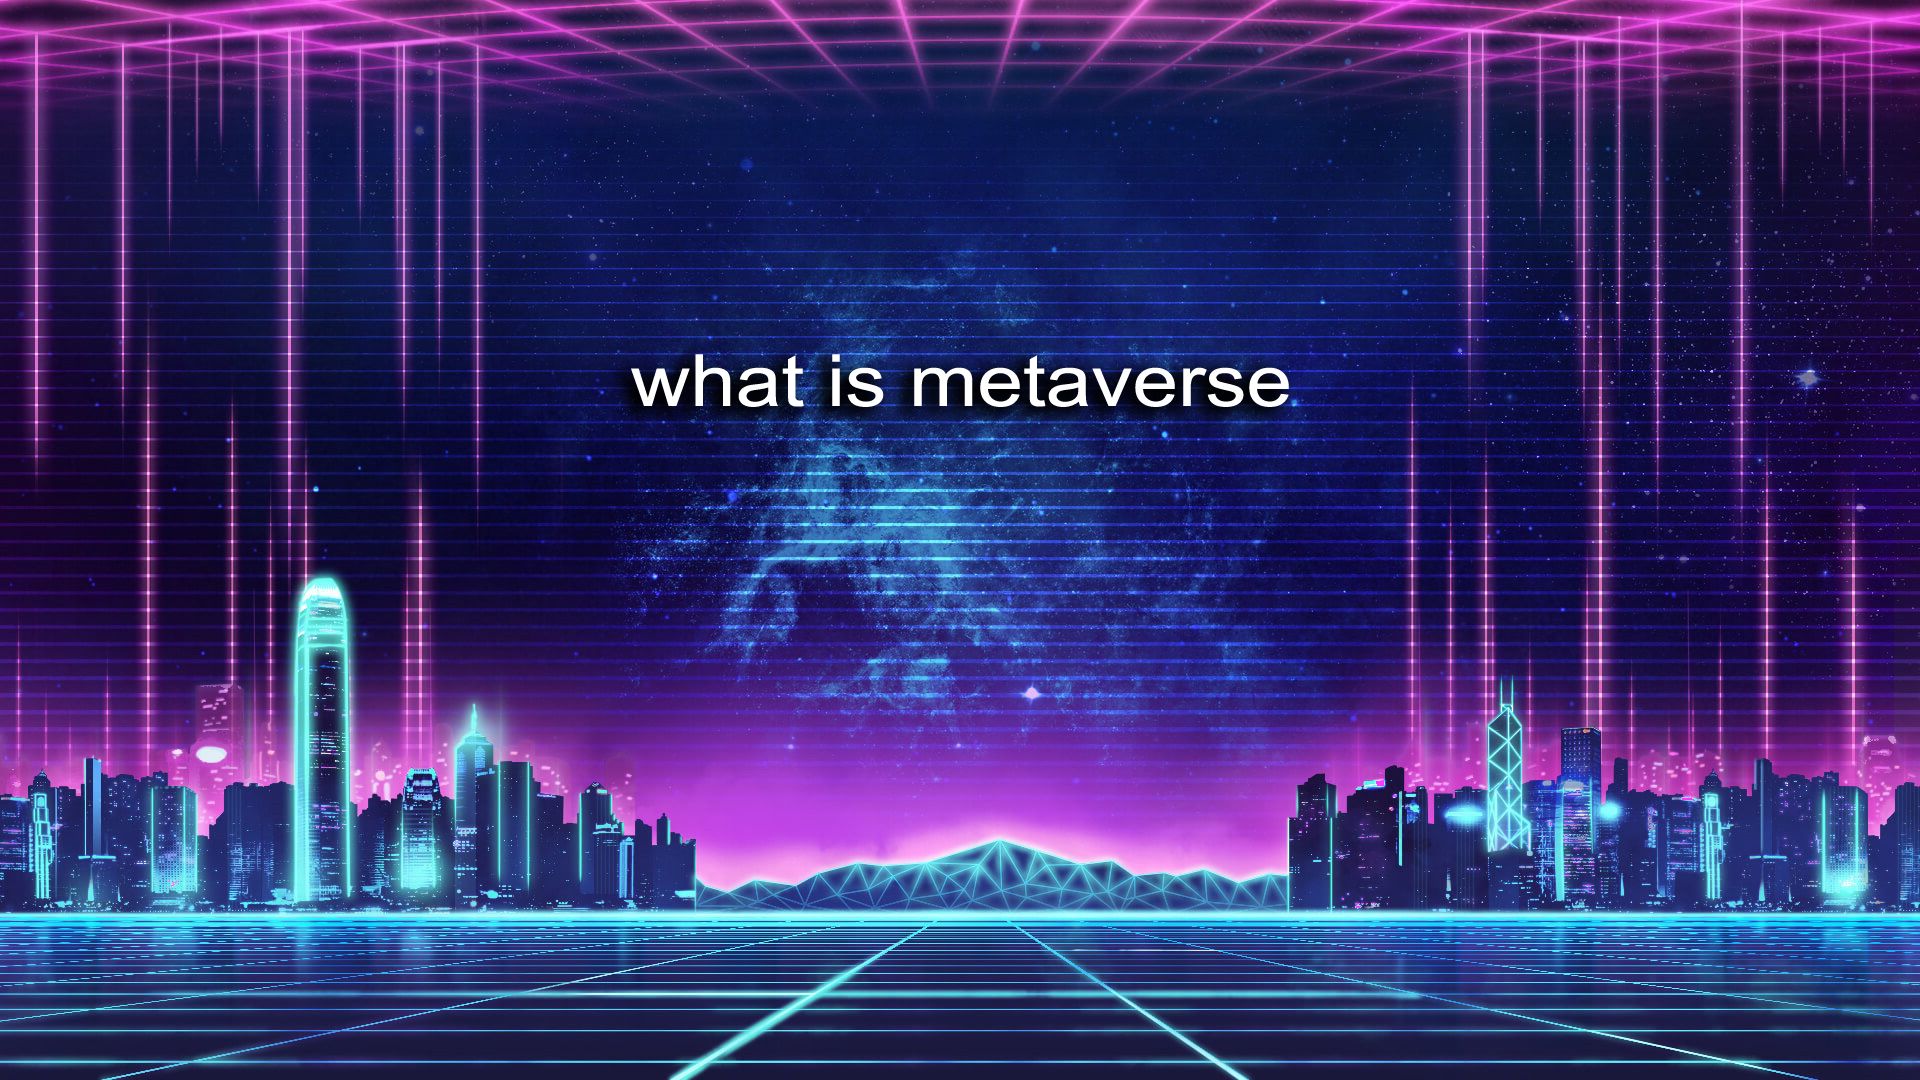 这张图片展示了充满科幻感的虚拟城市景观，紫色调，有“what is metaverse”字样，体现出对元宇宙概念的探索。